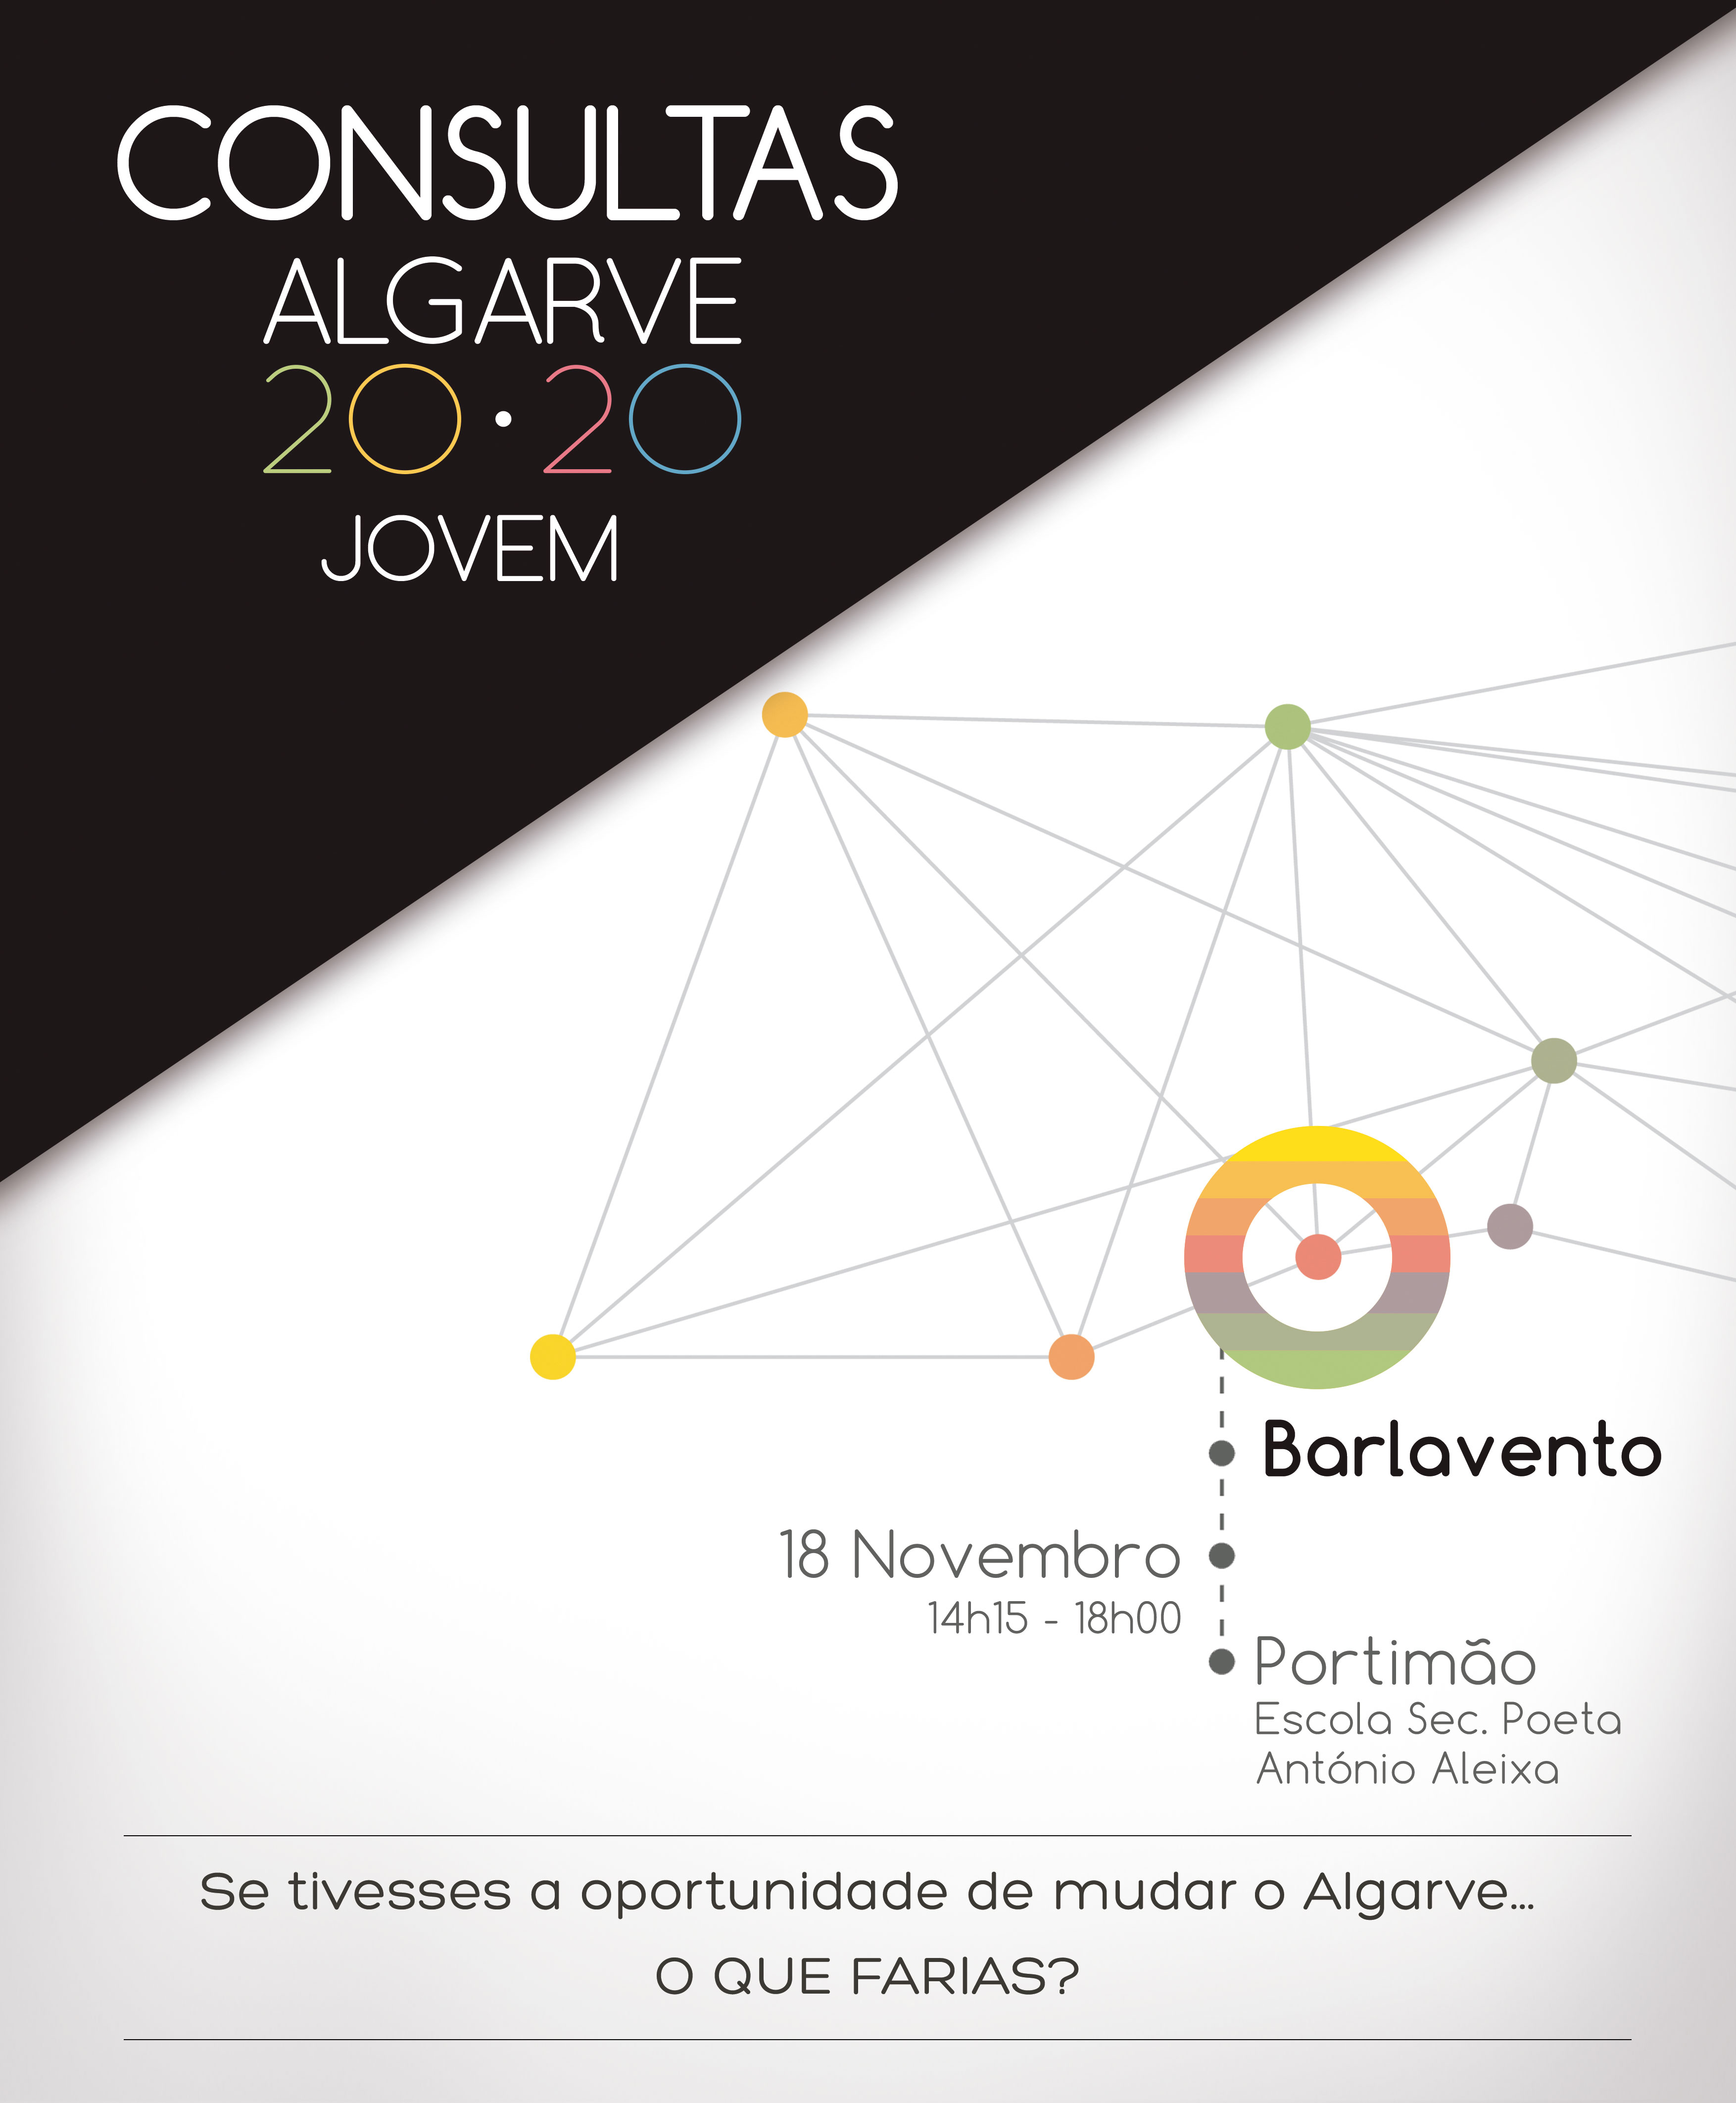 Consulta Algarve 2020 Jovem - Barlavento